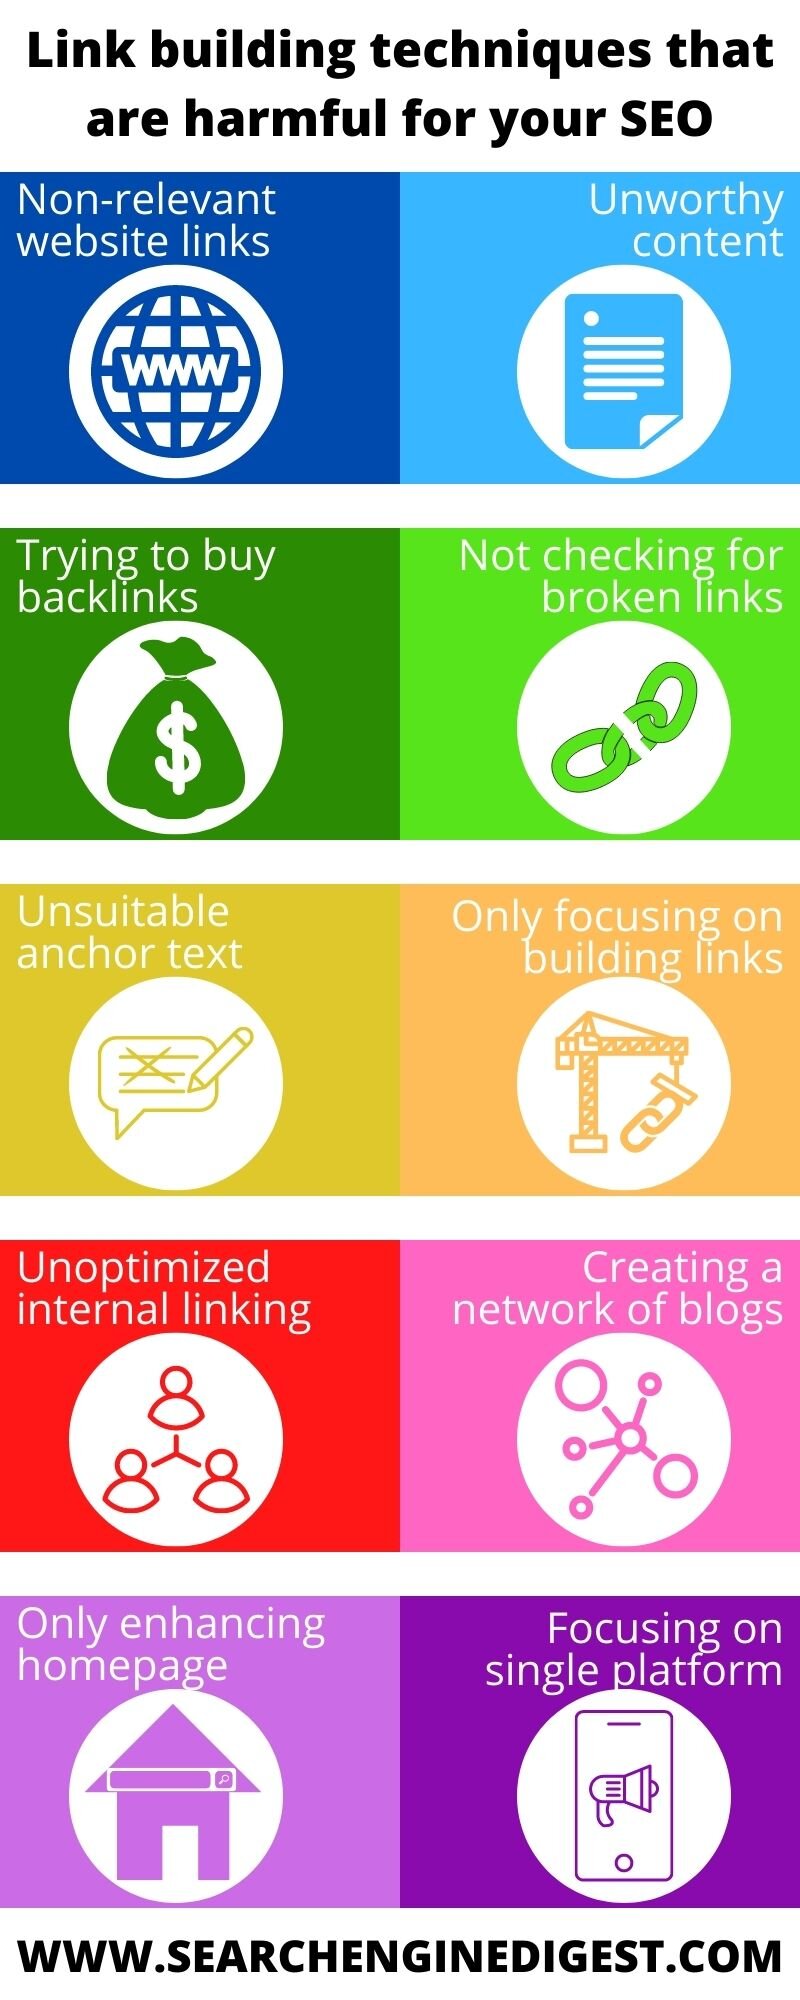 Link building techniques infographic